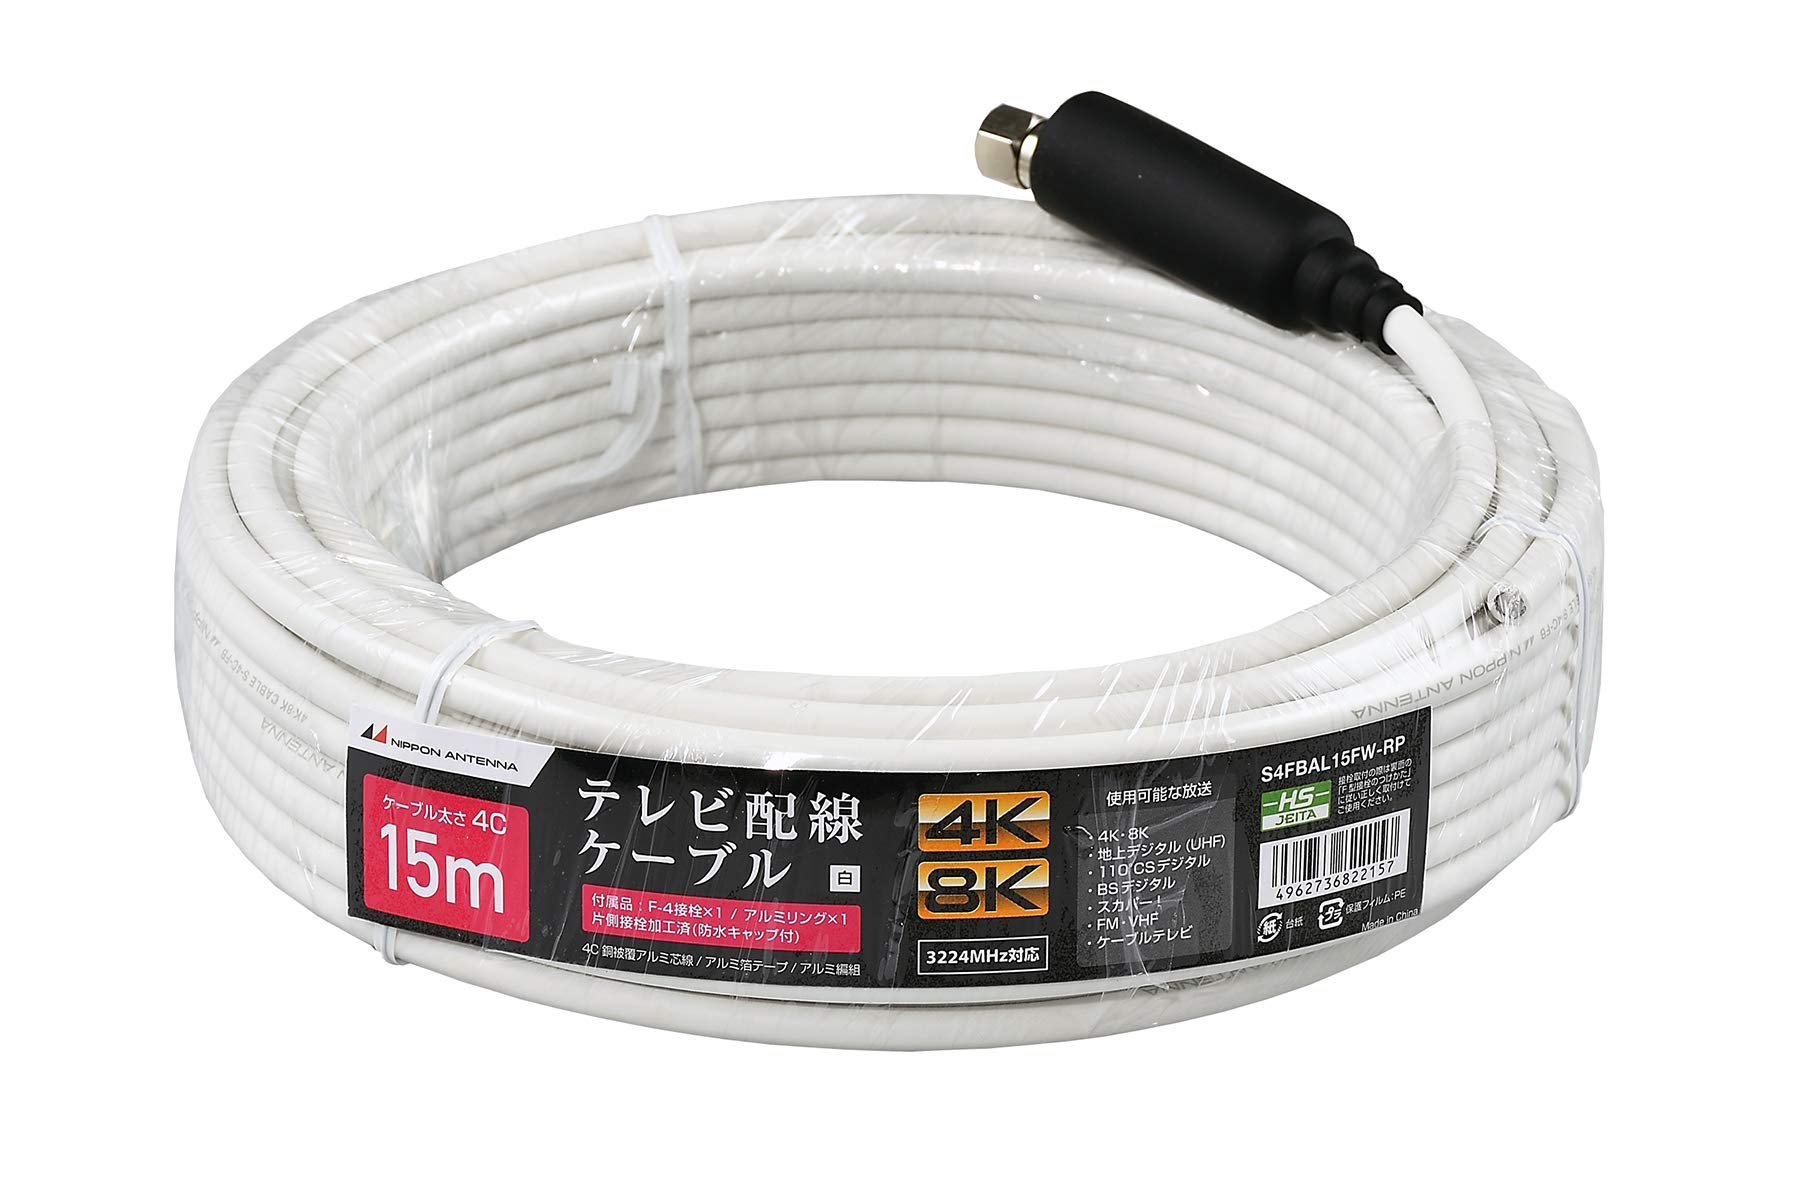 日本アンテナ 同軸ケーブル 4K8K対応 S4CFB 15m ホワイト 片側接線加工付 S4FBAL15FW-RP S4FBAL15FW-RP